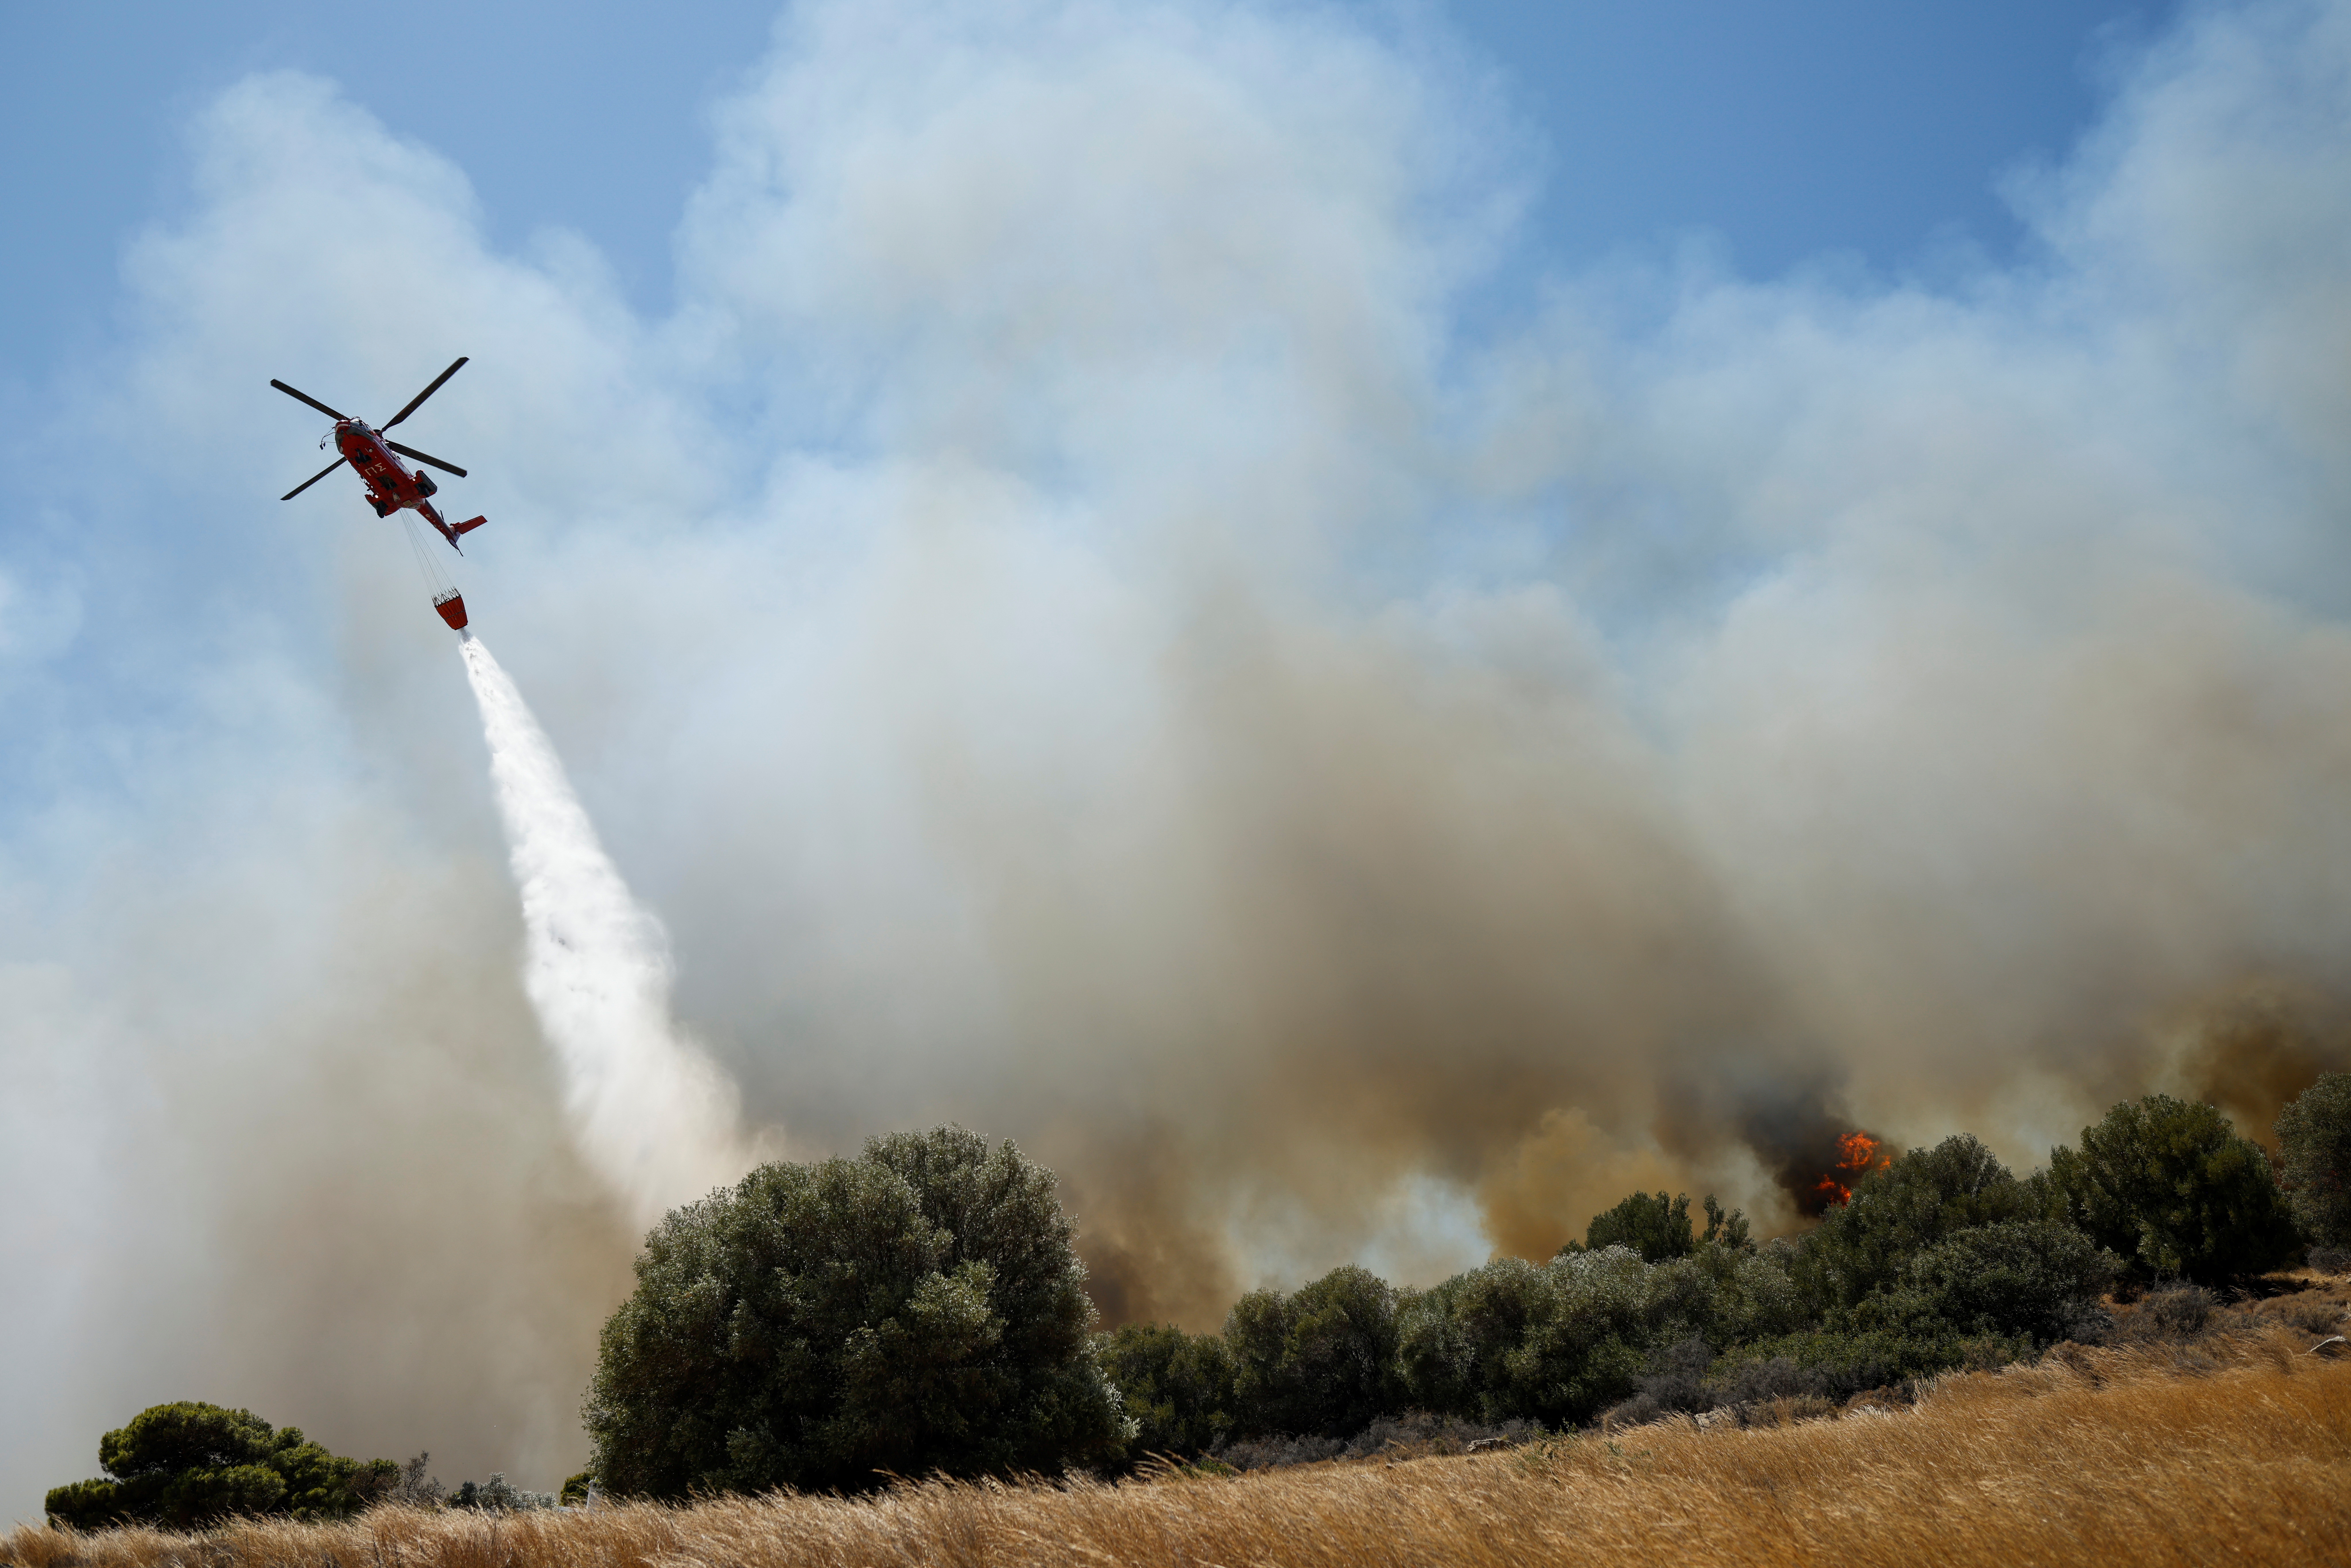 Un helicóptero contra incendios fai caer unha auga cando se queima un incendio na aldea de Markati, preto de Atenas, Grecia, o 16 de agosto de 2021. REUTERS / Alkis Konstantinidis